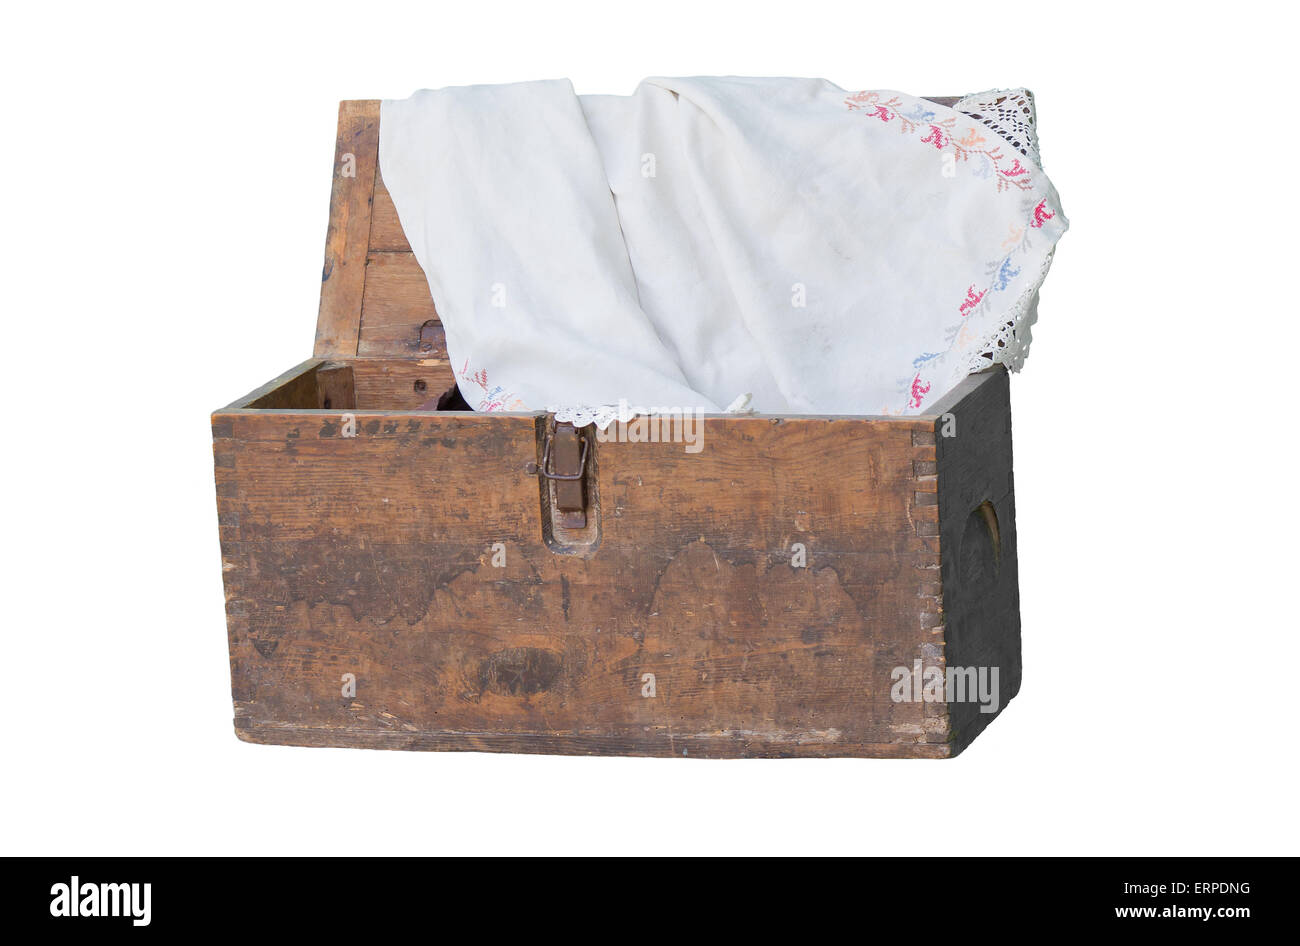 Une vieille boîte en bois de grand-mère avec des textiles brodés ukrainiens. Banque D'Images